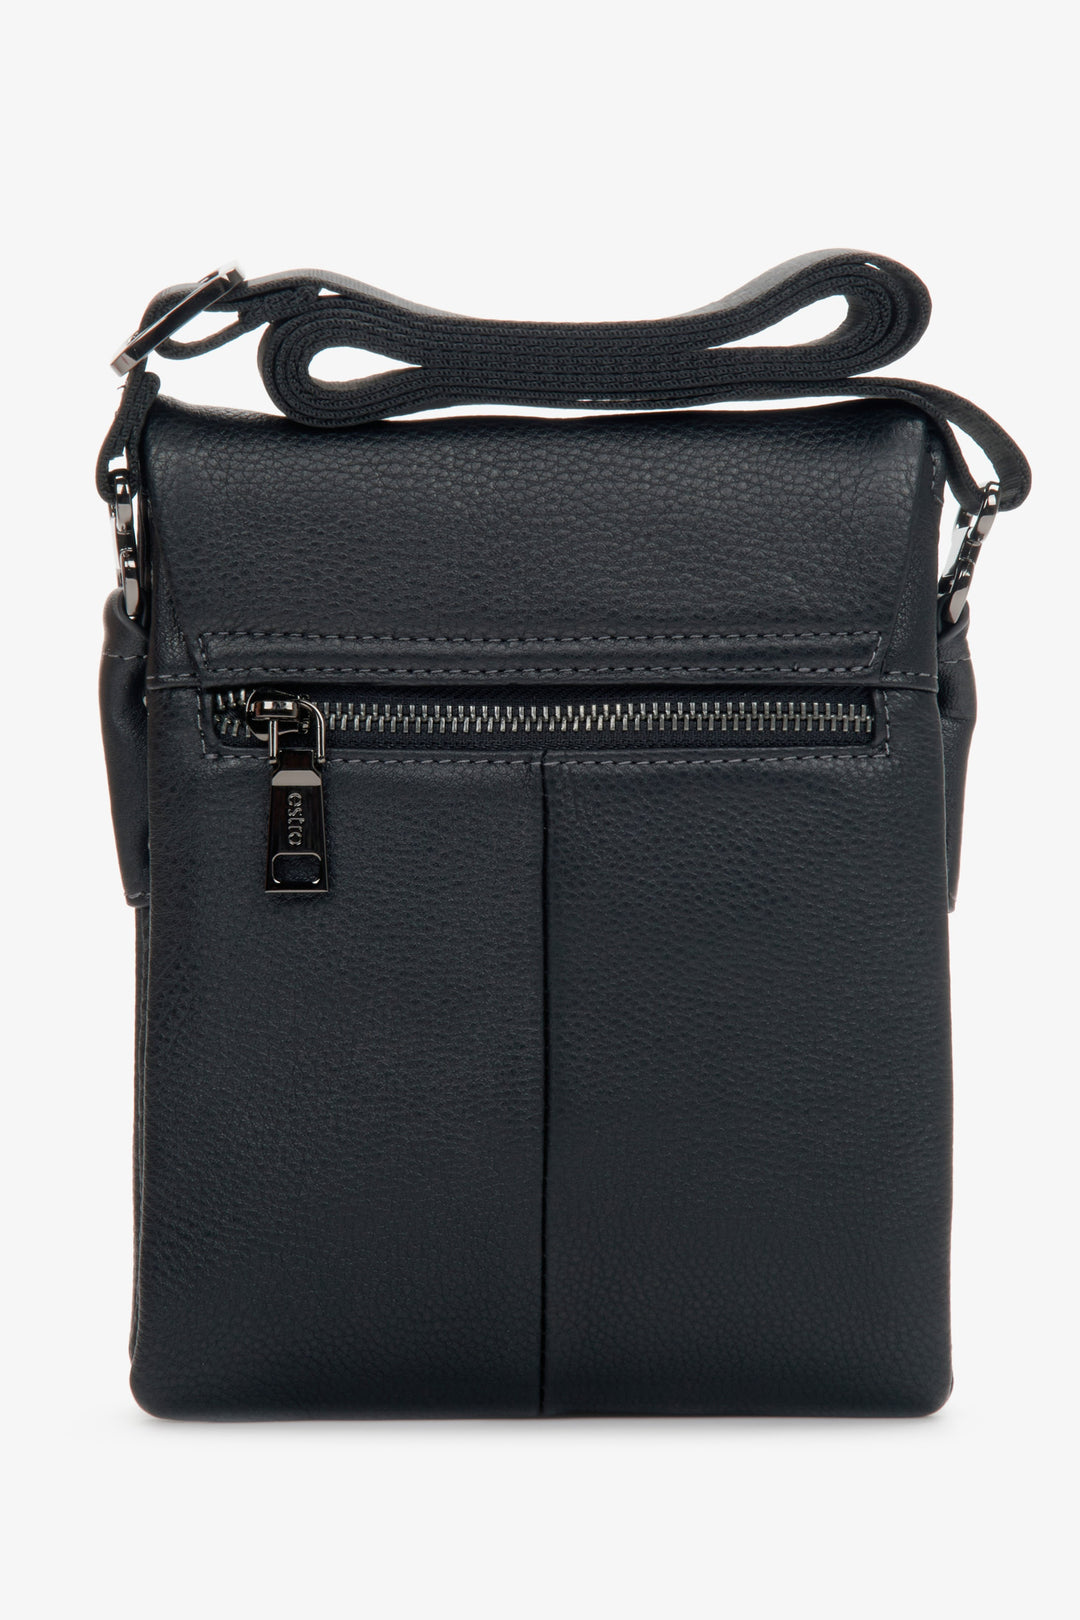 Men's small black shoulder bag made of genuine leather.